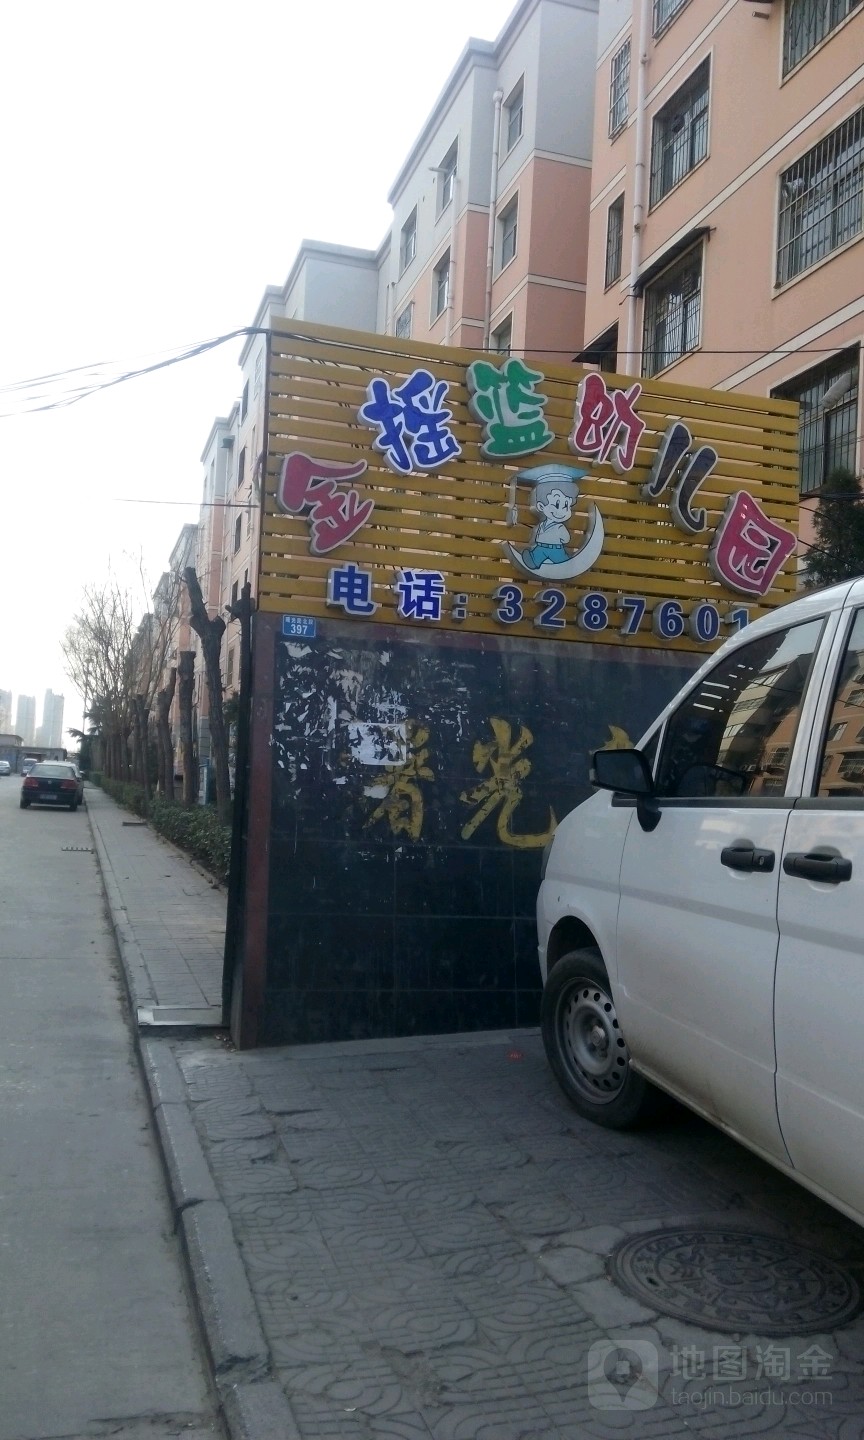 金摇篮幼儿园(北京红缨旗舰园)的图片